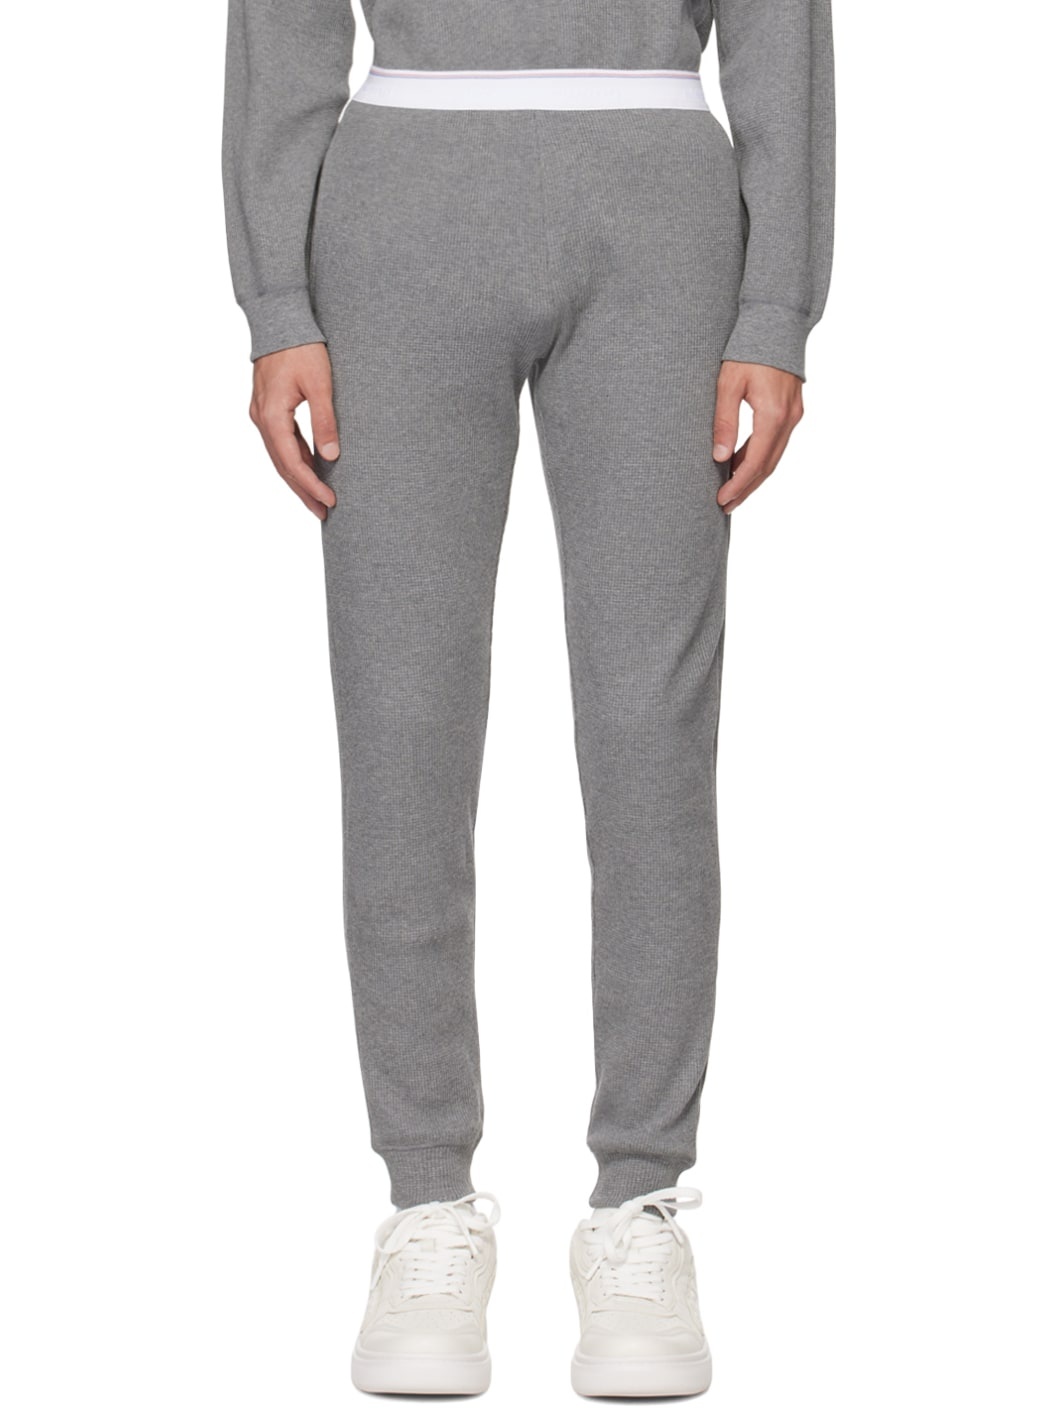 Gray Two-Pocket Sweatpants - 1